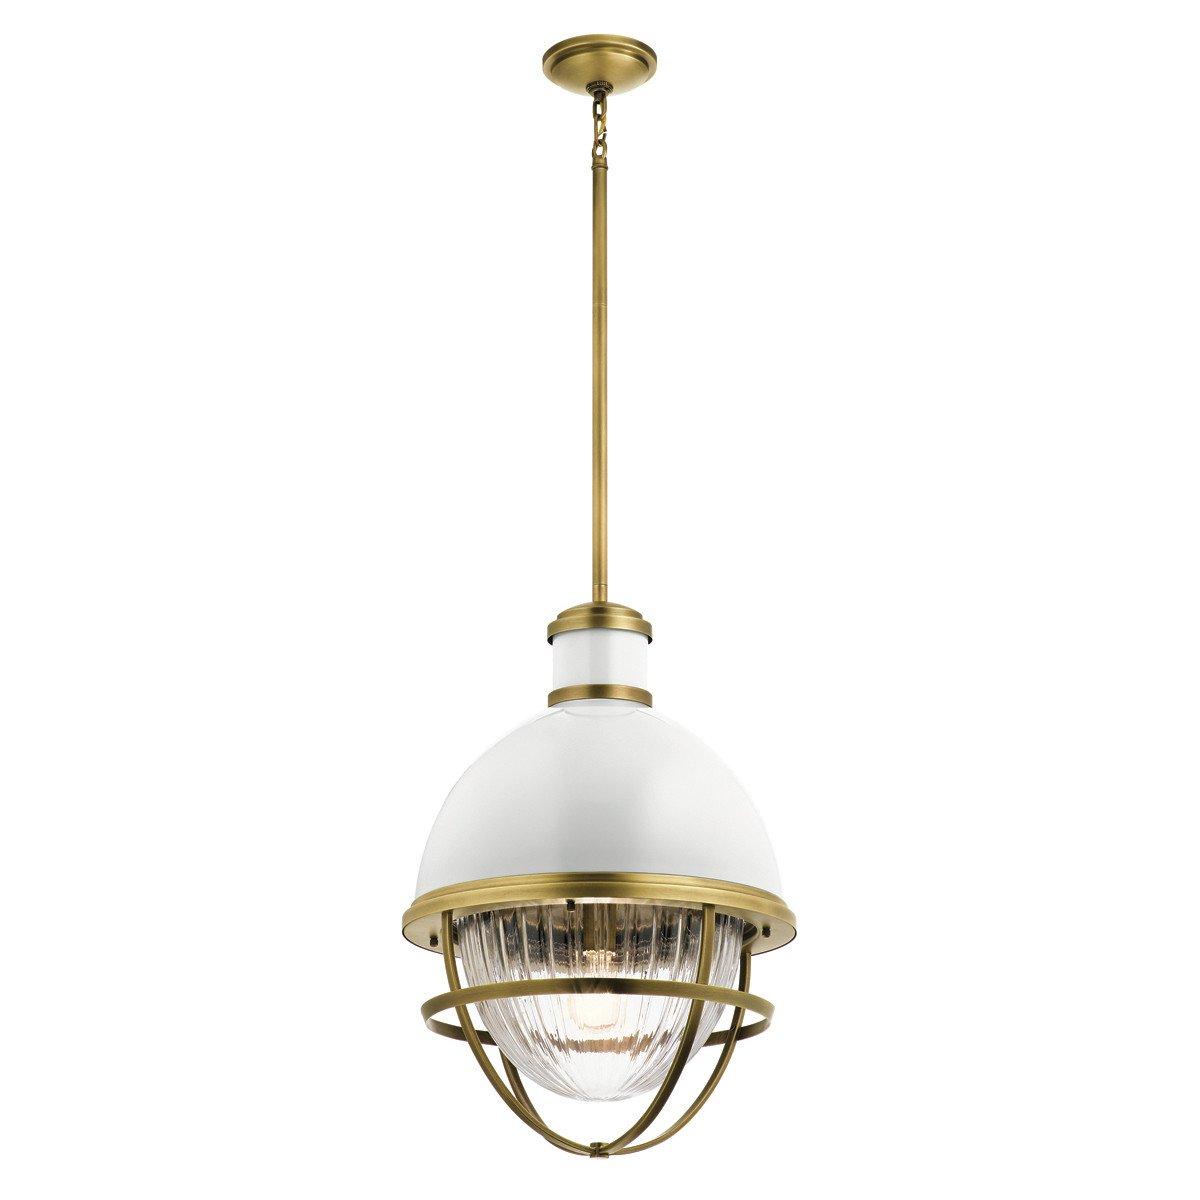 Kichler Tollis Globe Pendant Ceiling Light Natural Brass & White